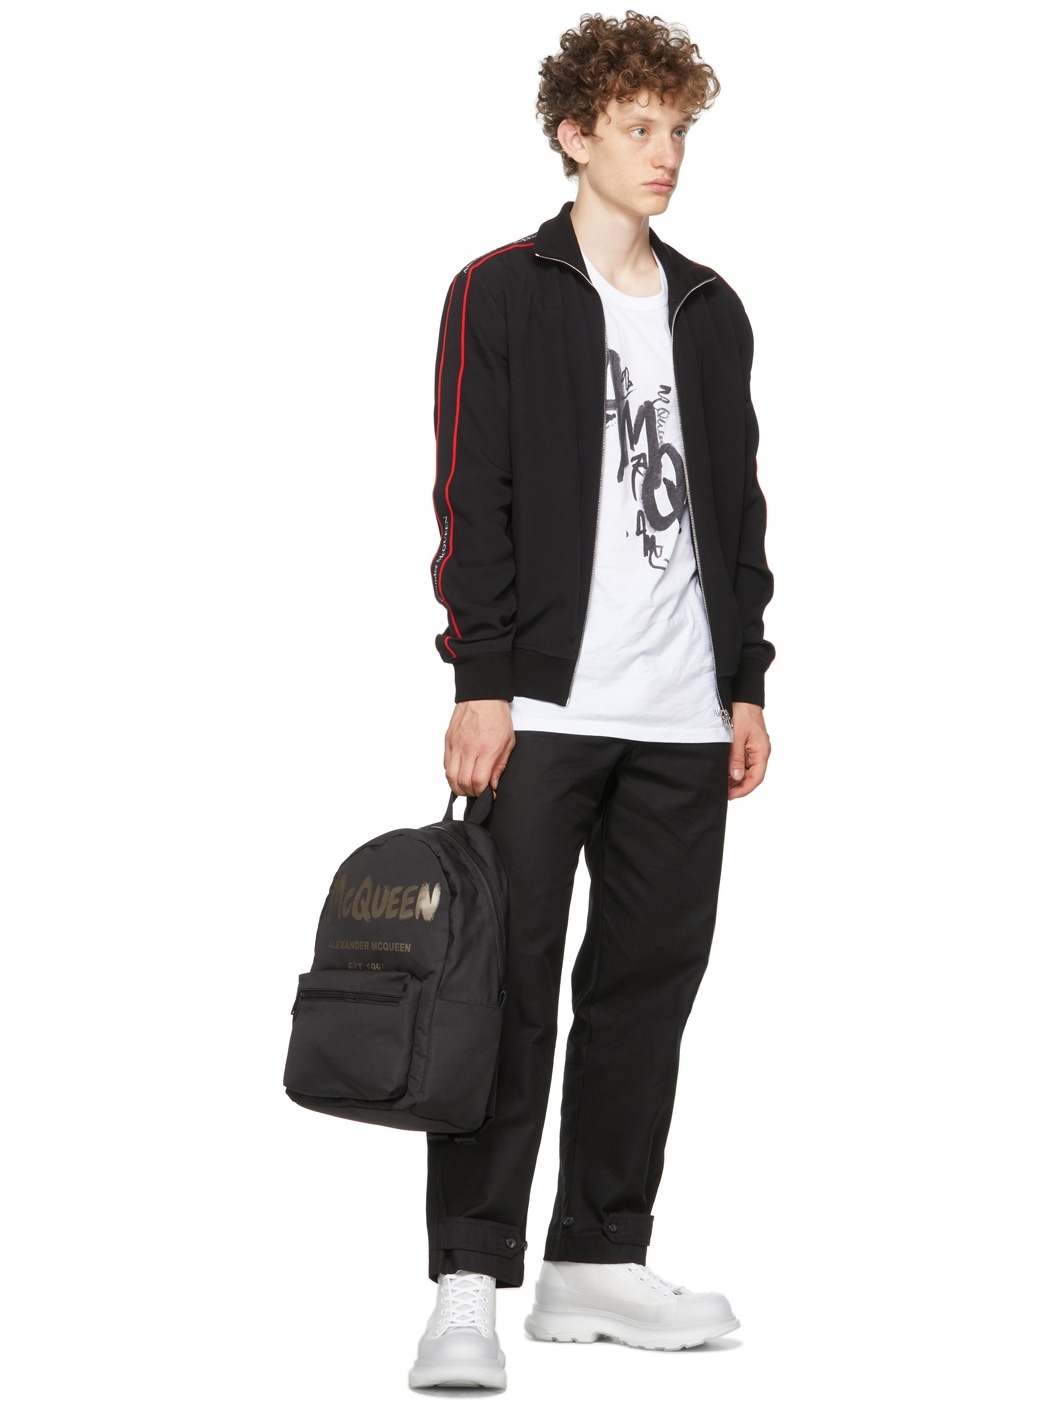 ALEXANDER MCQUEEN: Metropolitan backpack with Biker Skull motif - Black